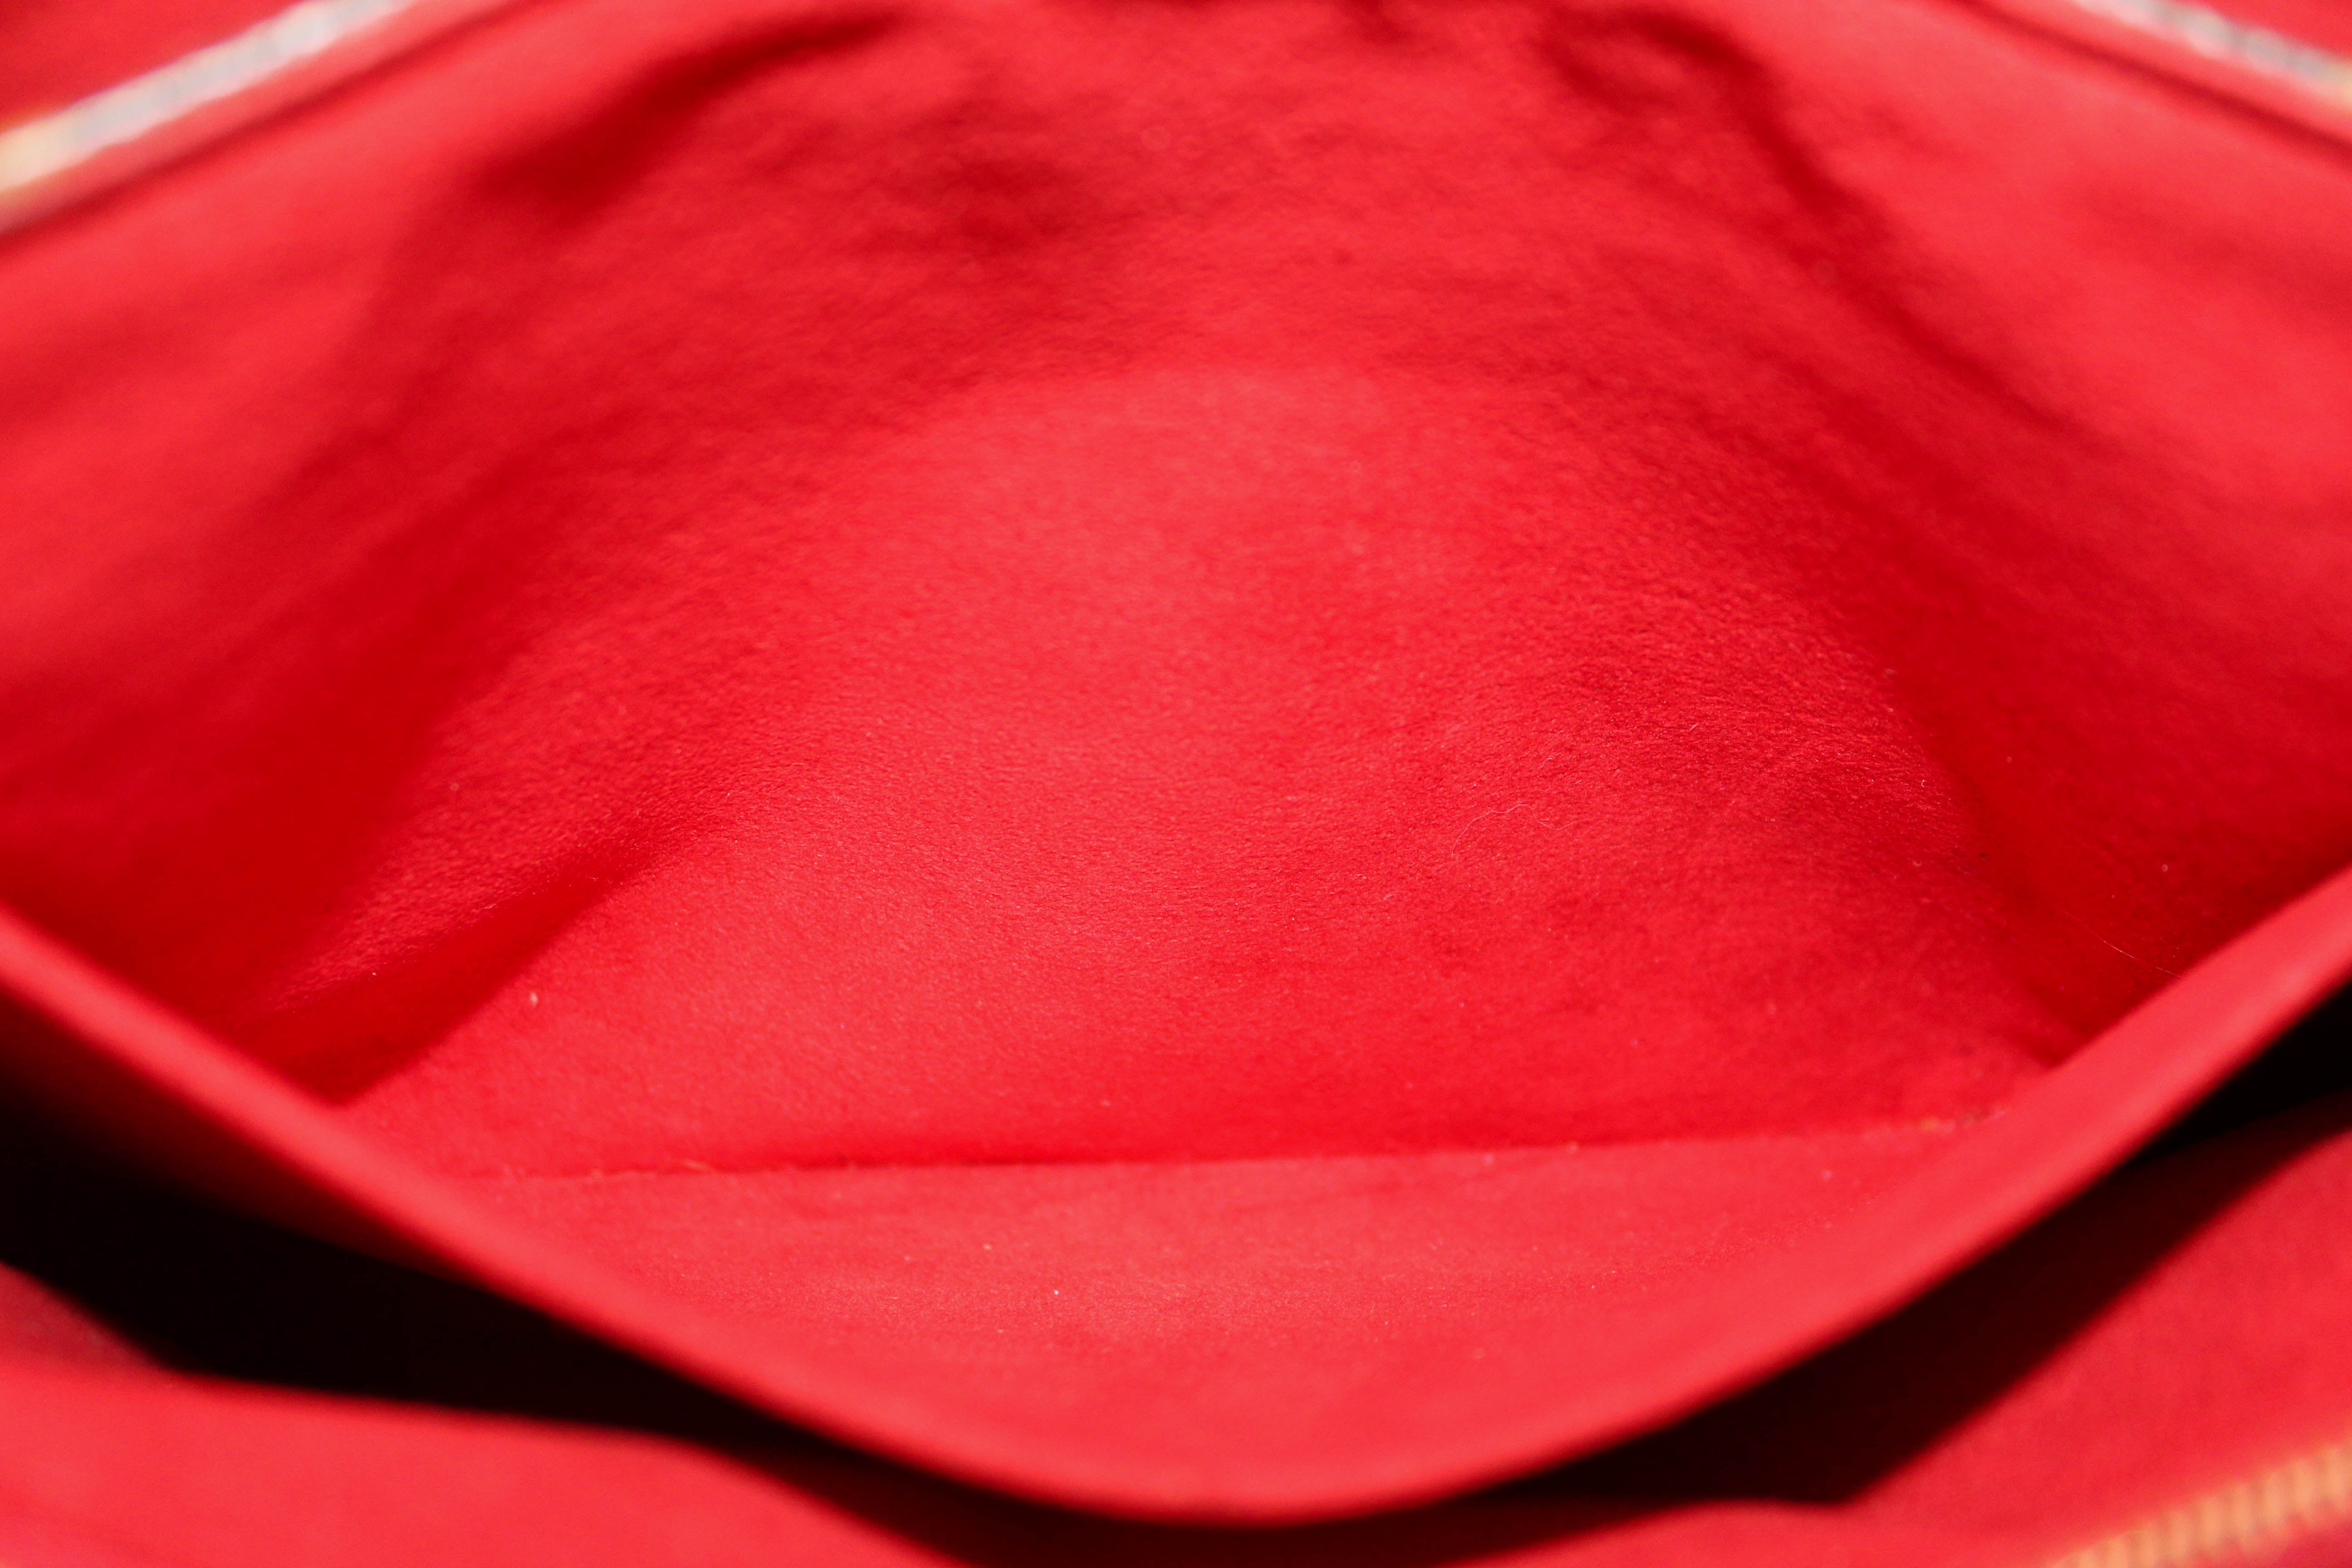 Authentic Louis Vuitton Red Monogram Pallas Chain Shoulder Bag – Paris  Station Shop